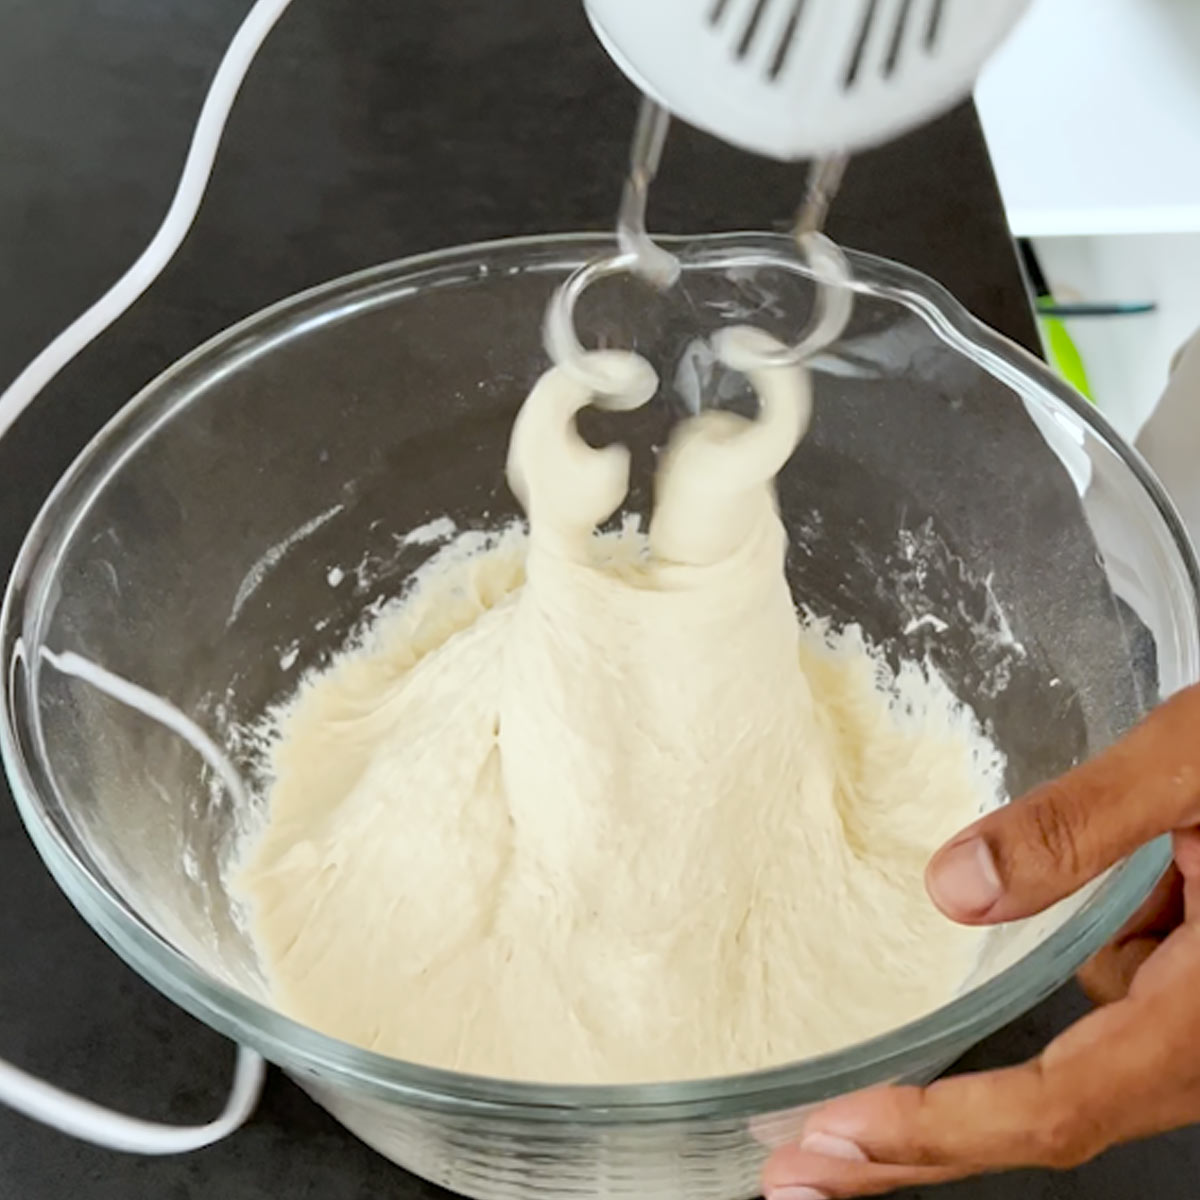 mix and beat baguette dough with a mixer dough hook